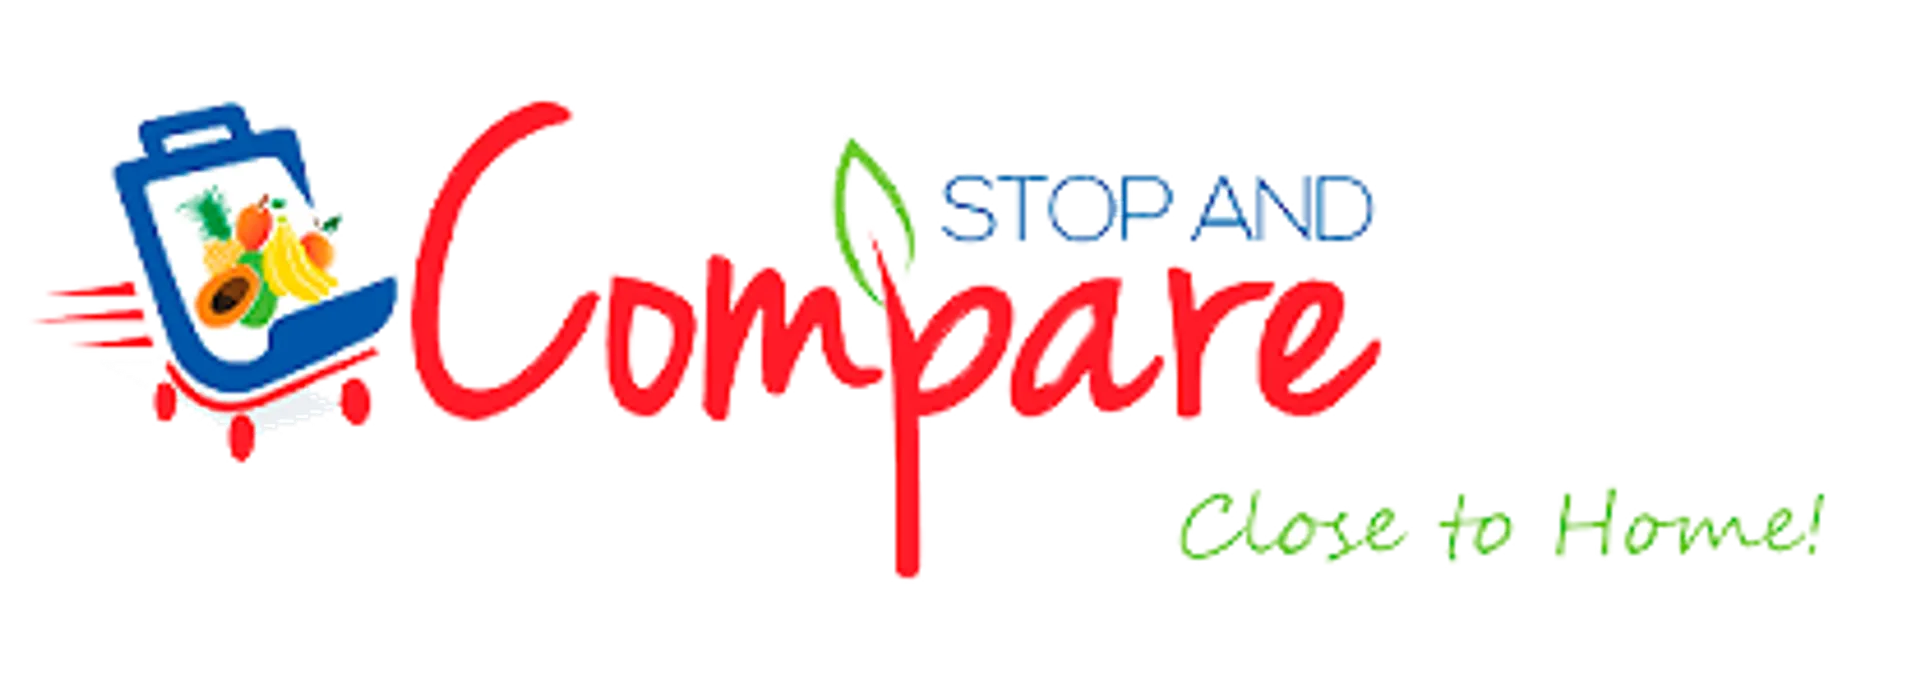 STOP AND COMPARE MARKETS logo de catálogo